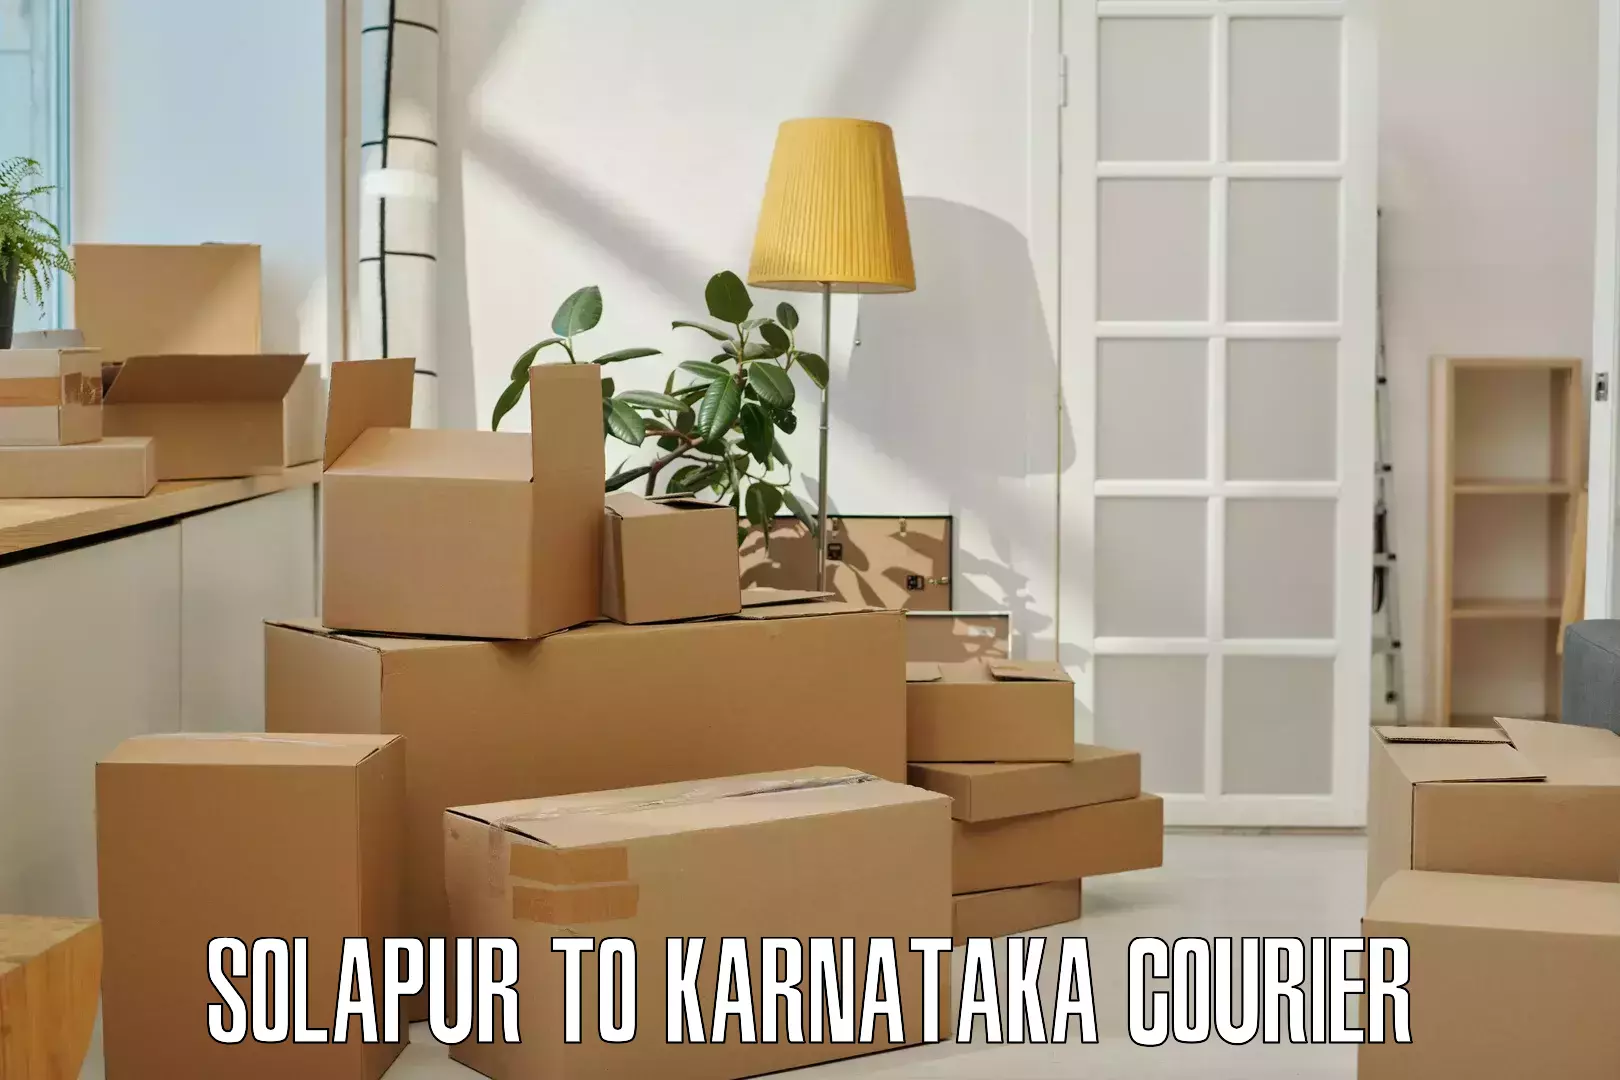 Express delivery network Solapur to Kanakapura